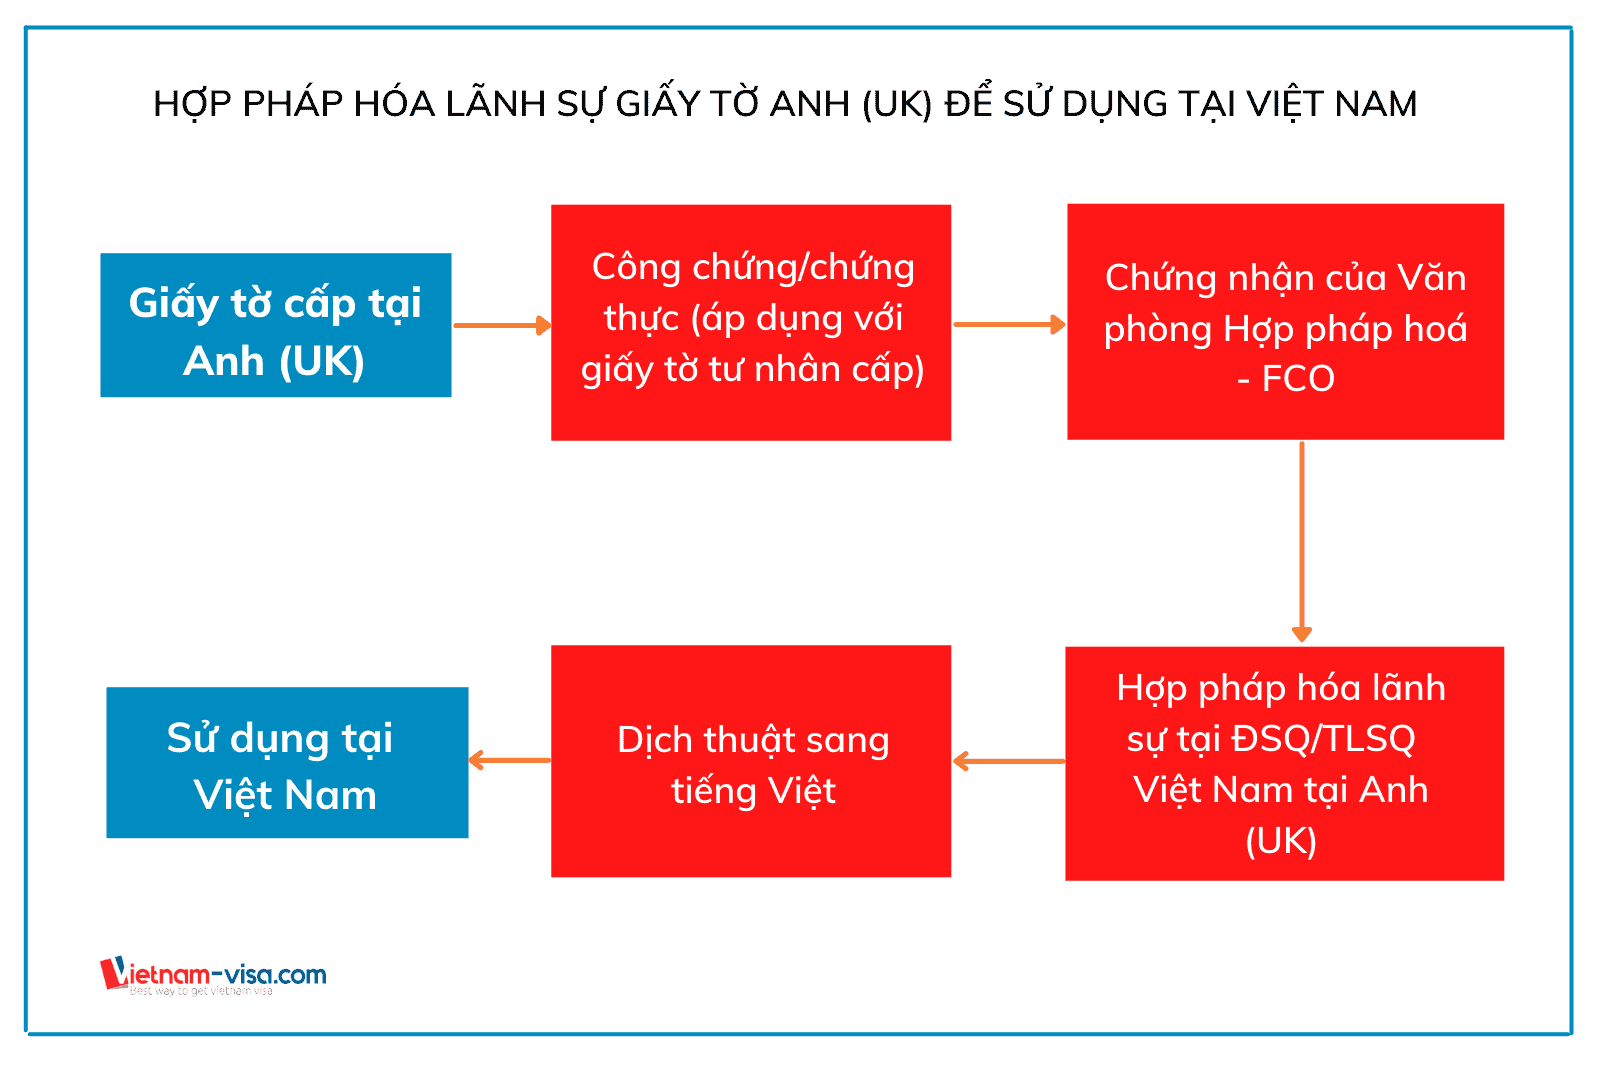 Thủ tục hợp pháp hóa lãnh sự giấy tờ Anh để sử dụng tại Việt Nam